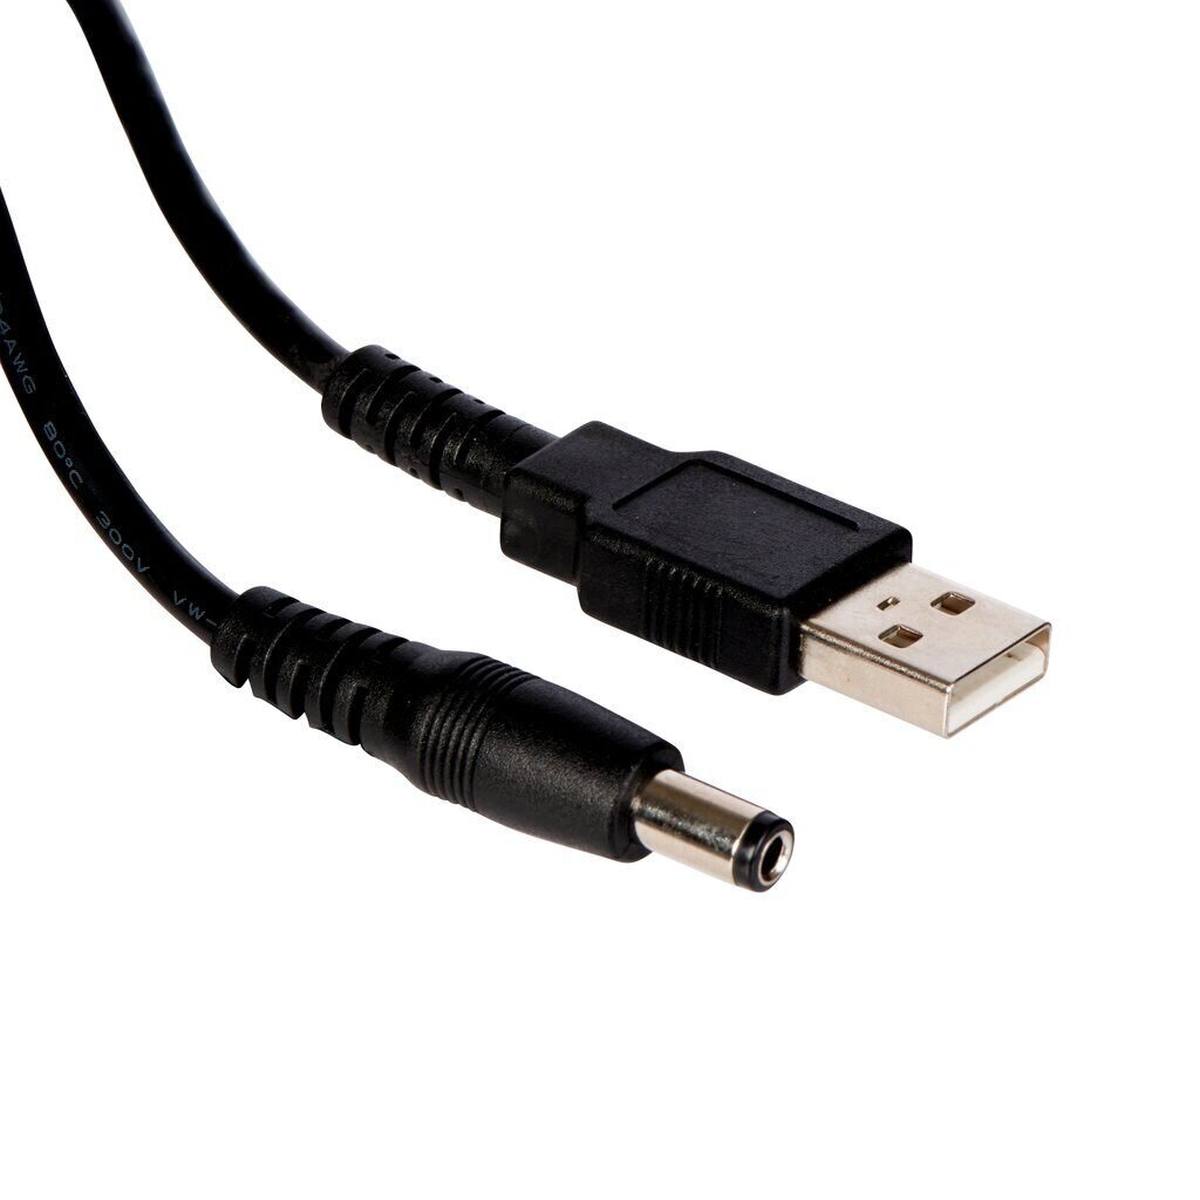 3M PELTOR USB oplaadkabel, FR09